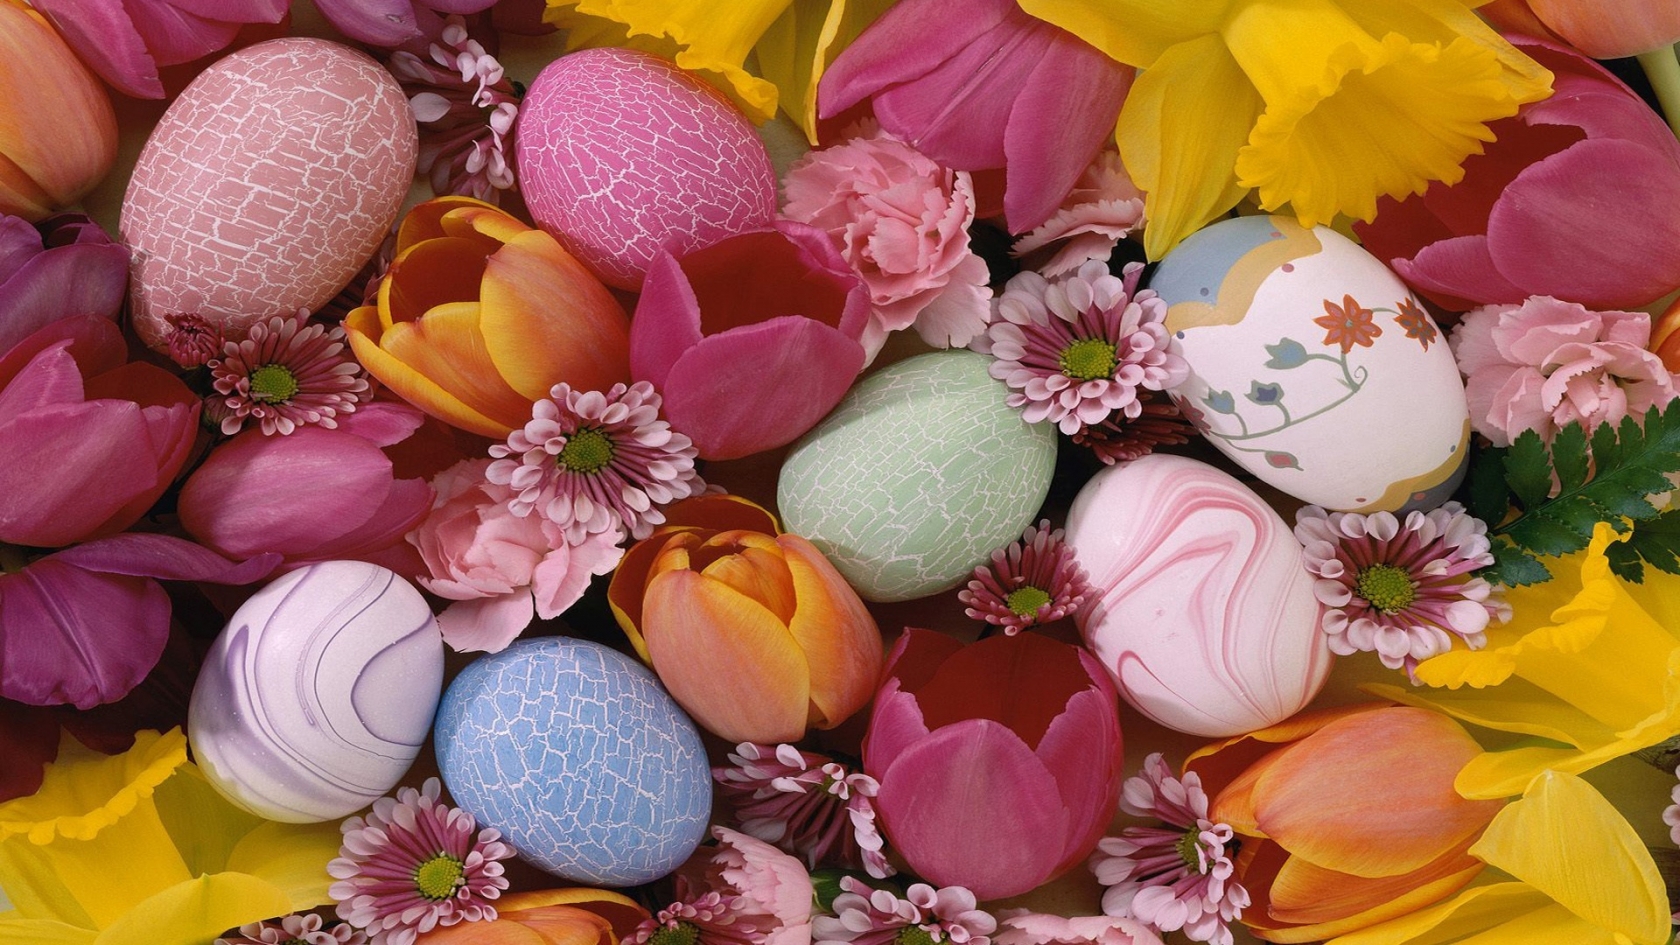 Easter Pastel Eggs for 1680 x 945 HDTV resolution